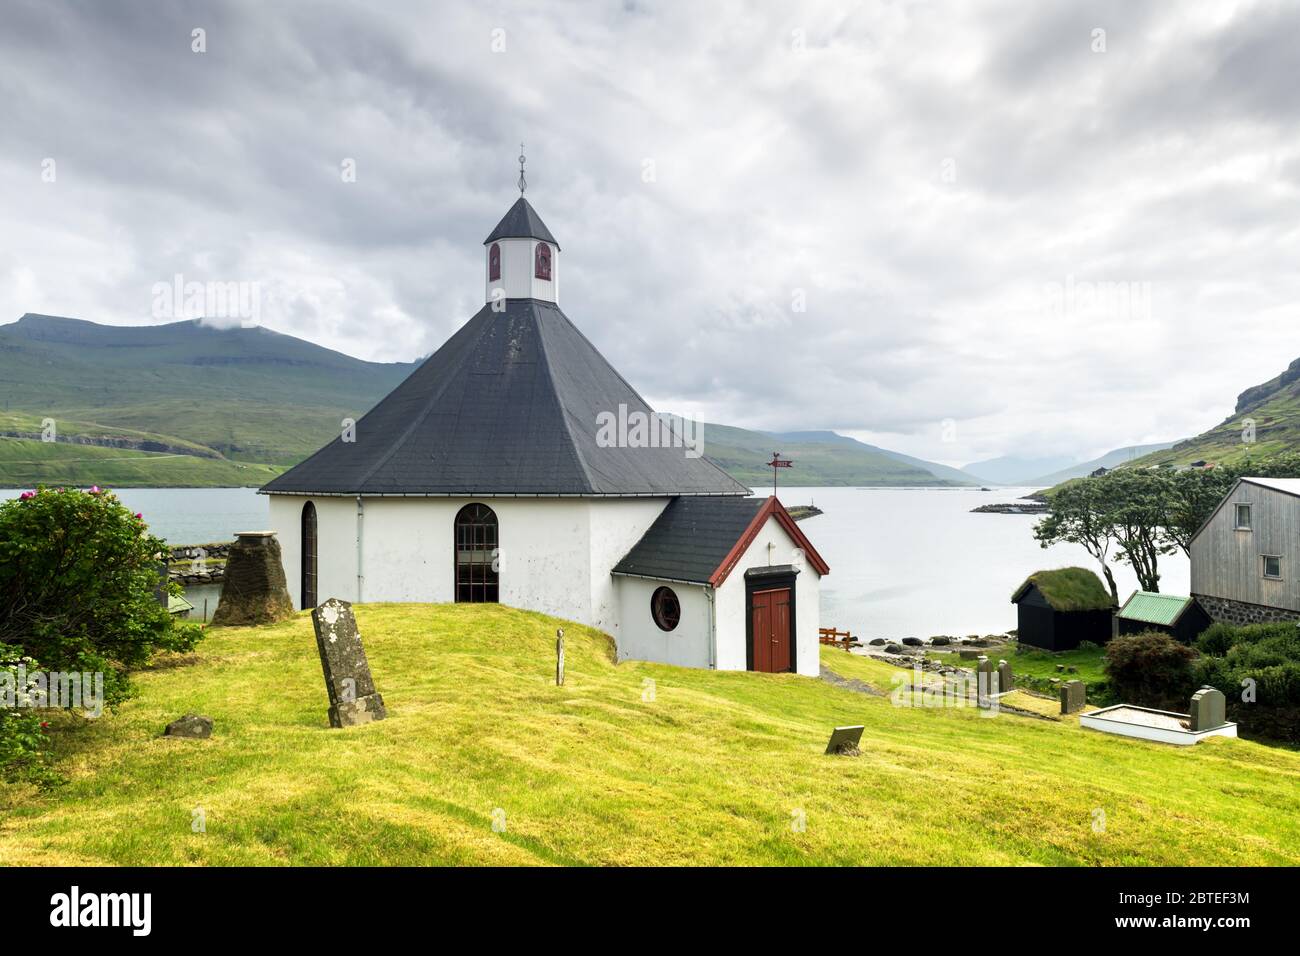 Sommer Blick auf die traditionelle Kirche in faroese Dorf. Schöne Landschaft mit nebeligen Fjord und hohen Bergen. Färöer, Dänemark. Stockfoto